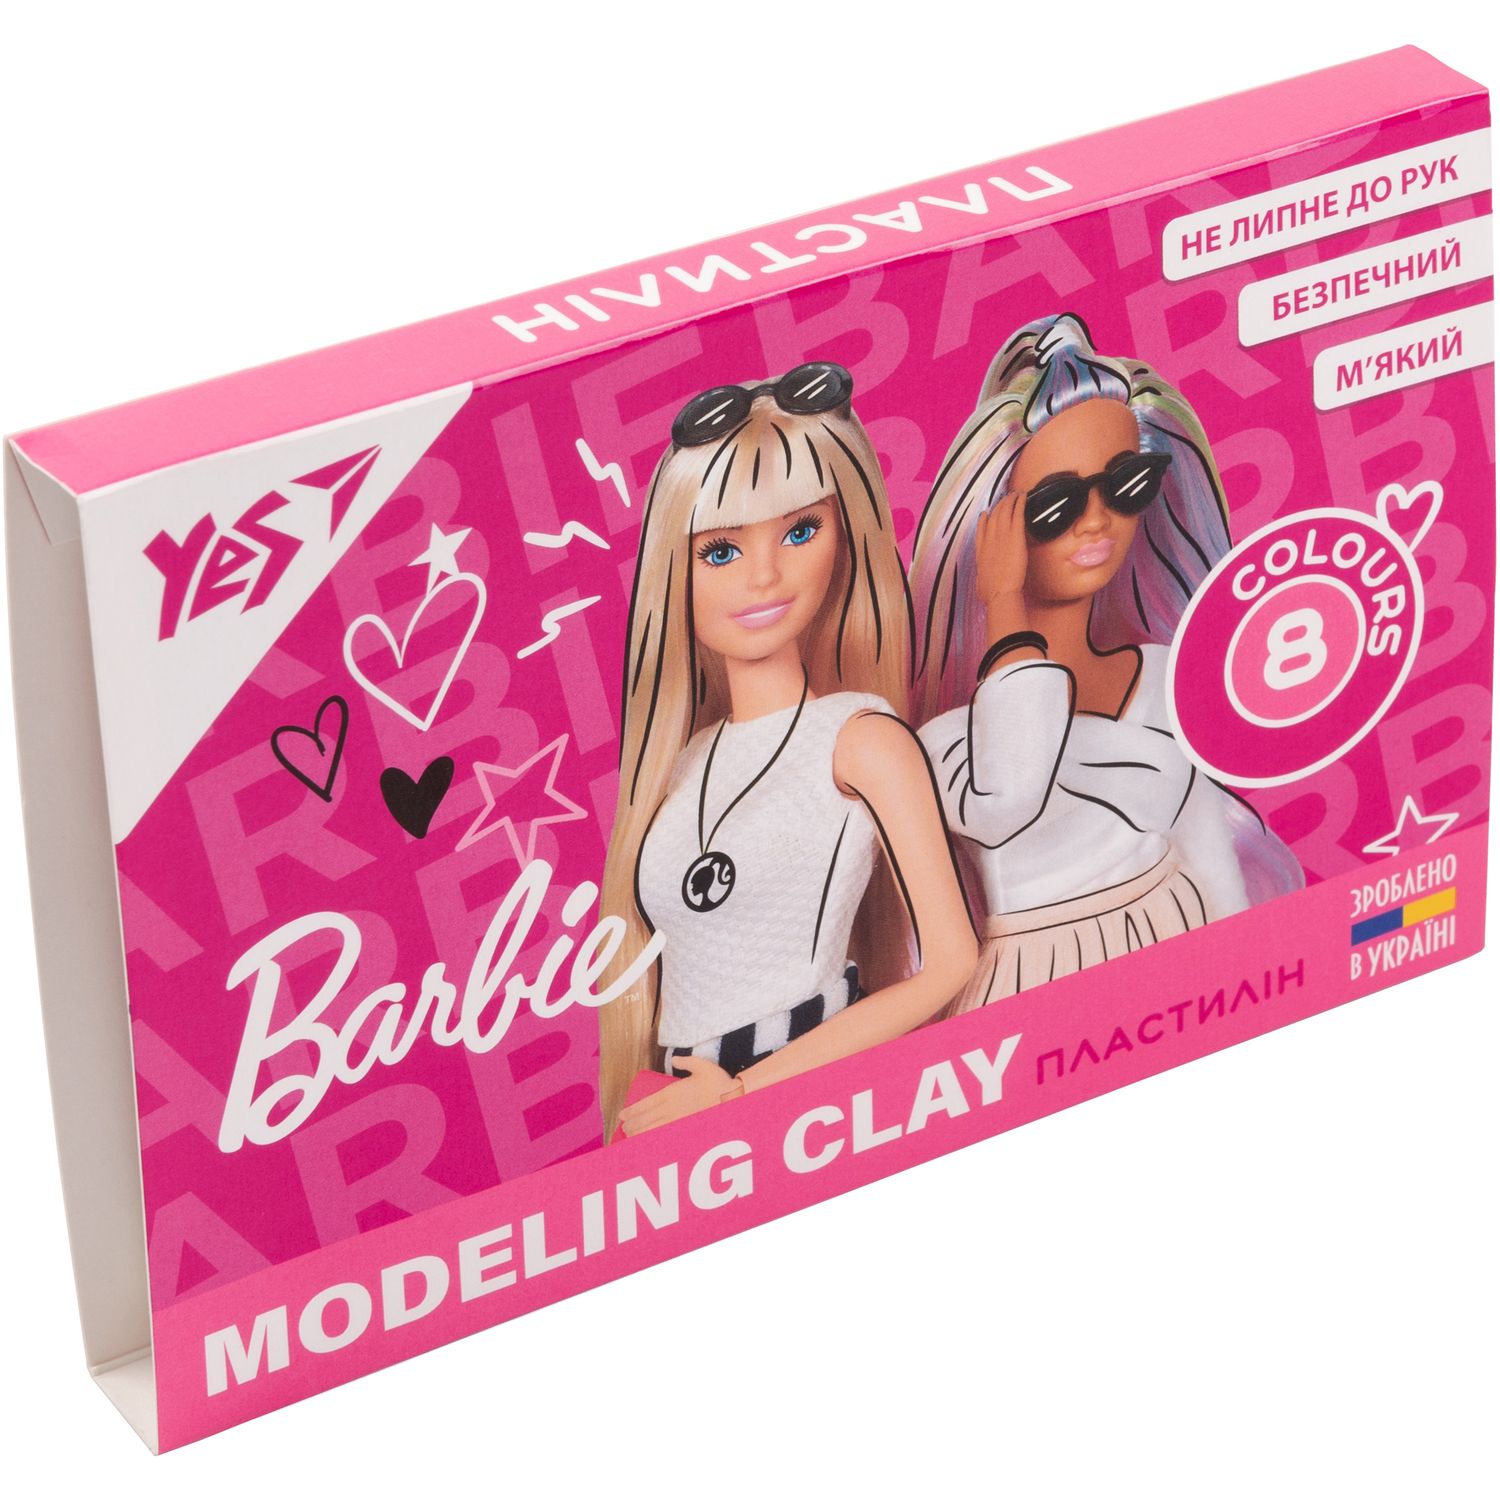 Пластилин Yes Barbie, 8 цветов, 160 г (540611) - фото 1